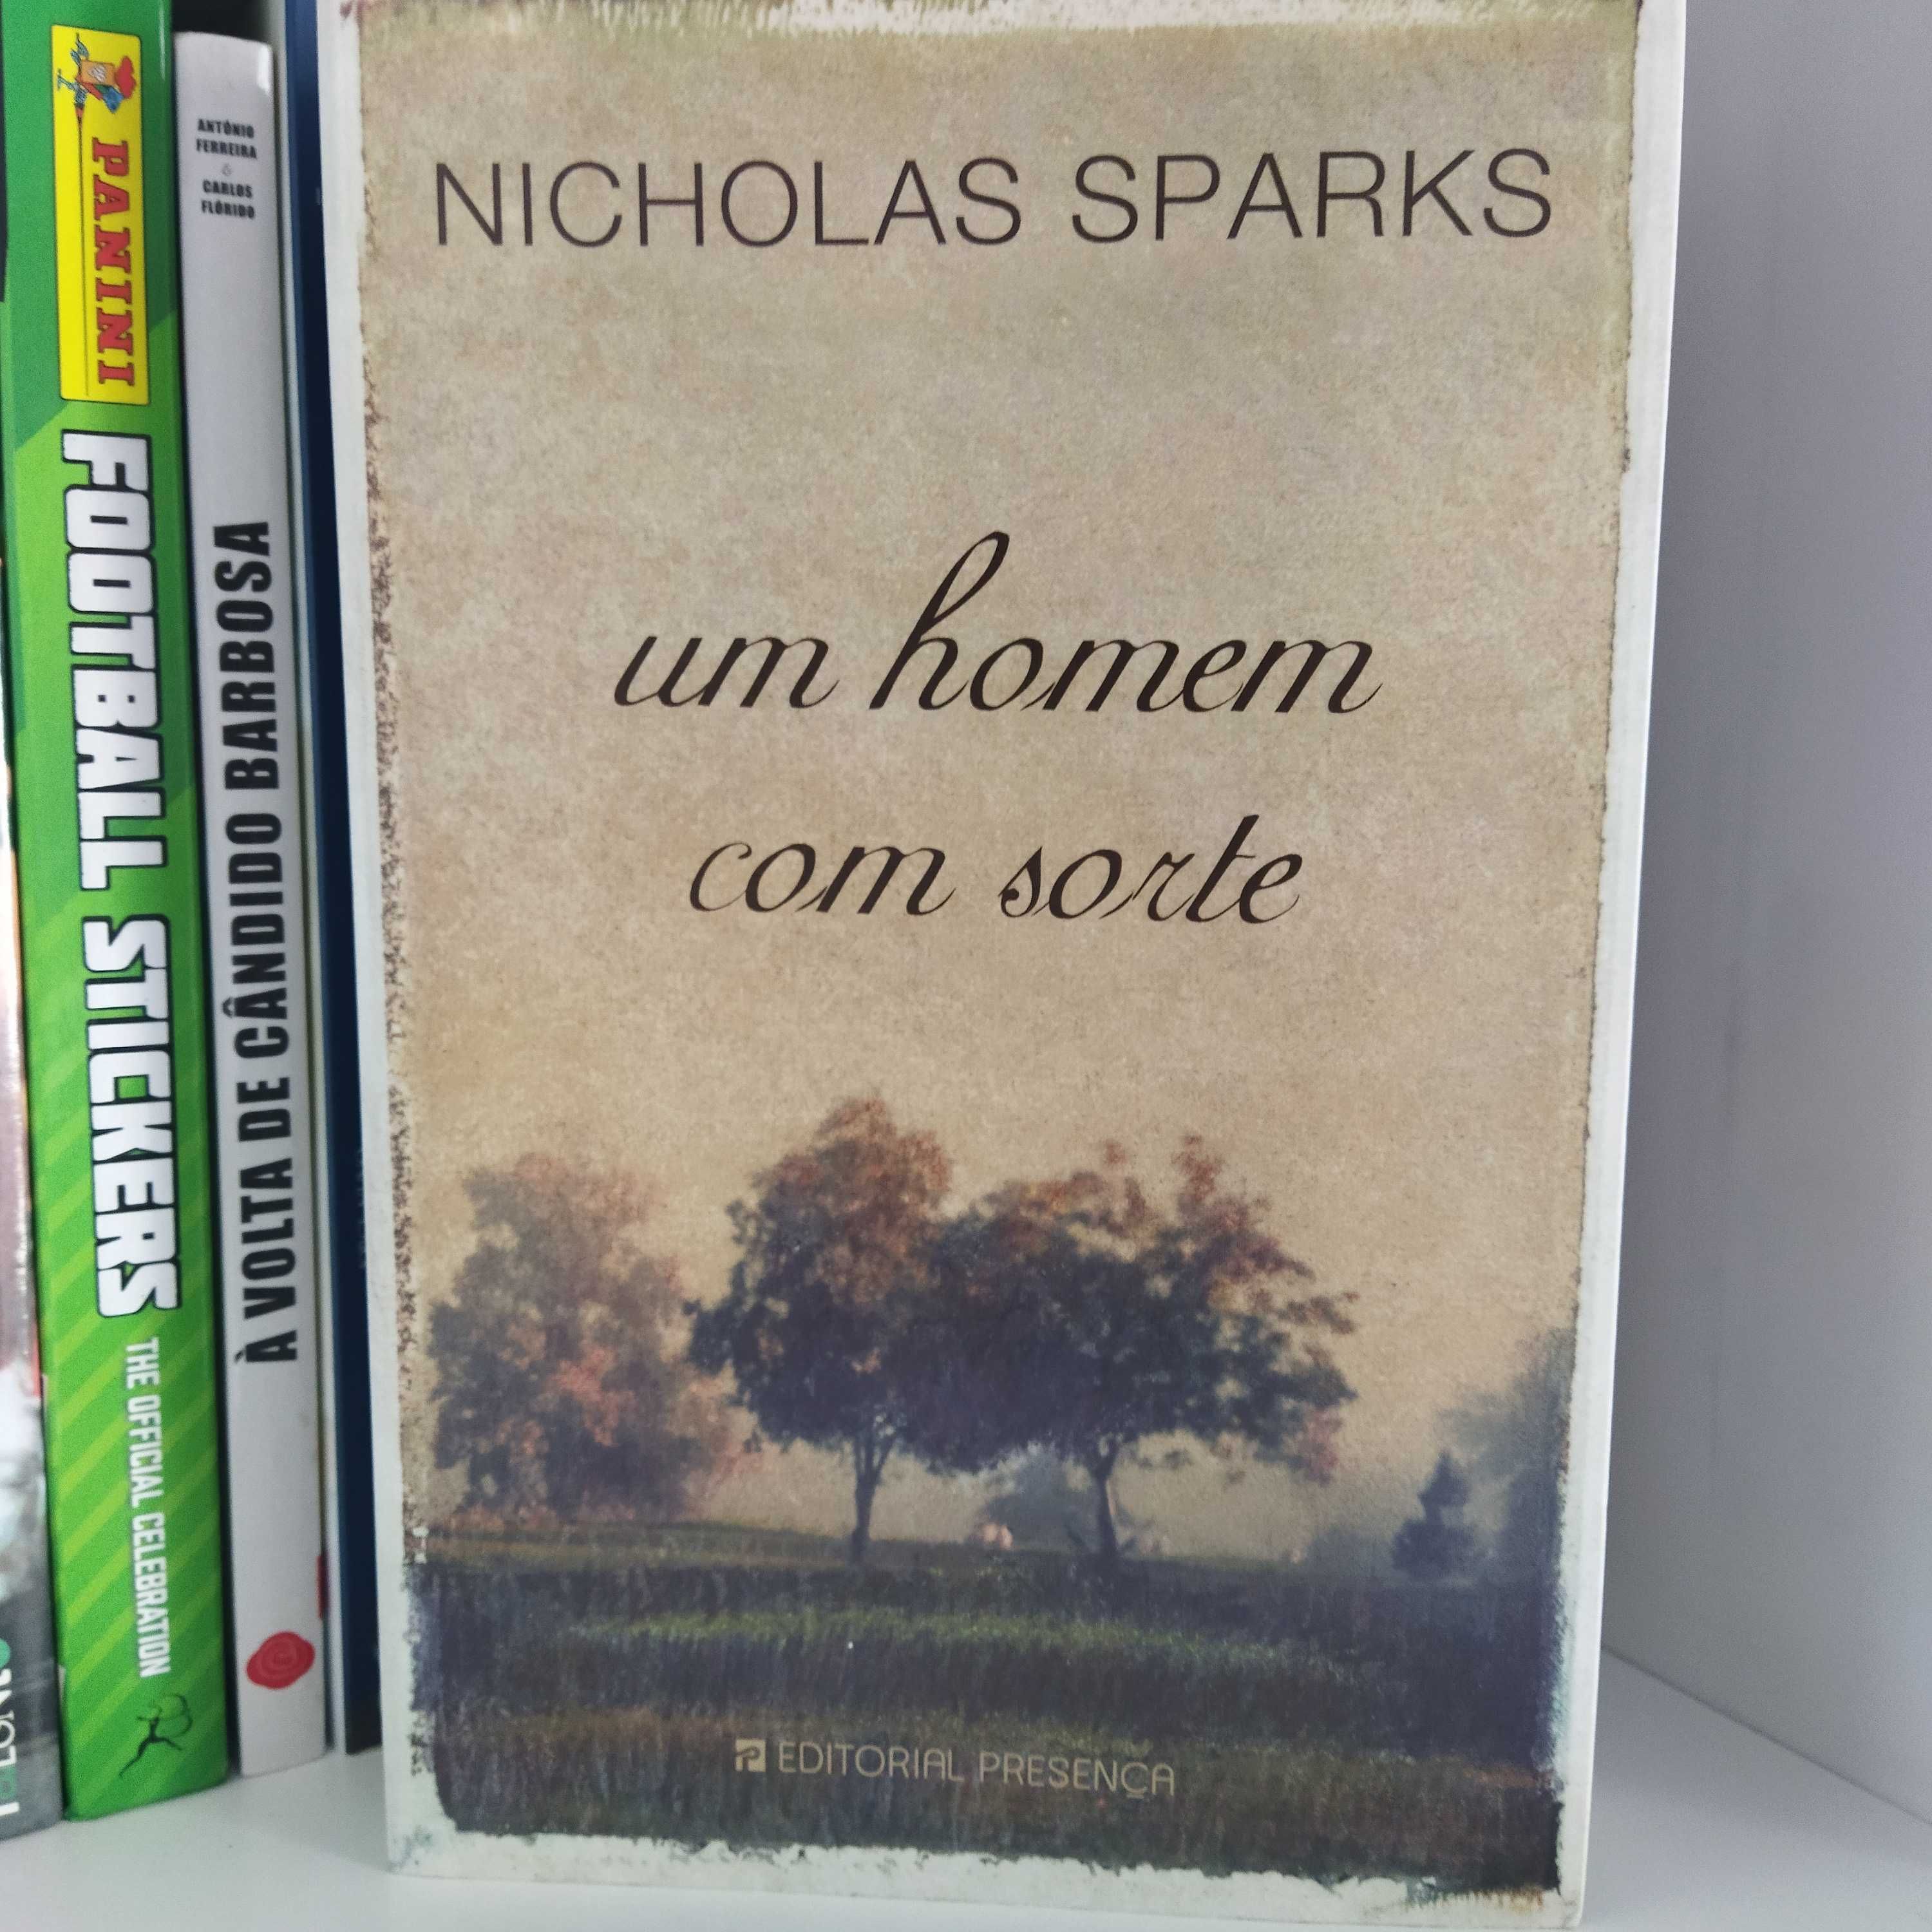 Nicholas Sparks - um homem com sorte